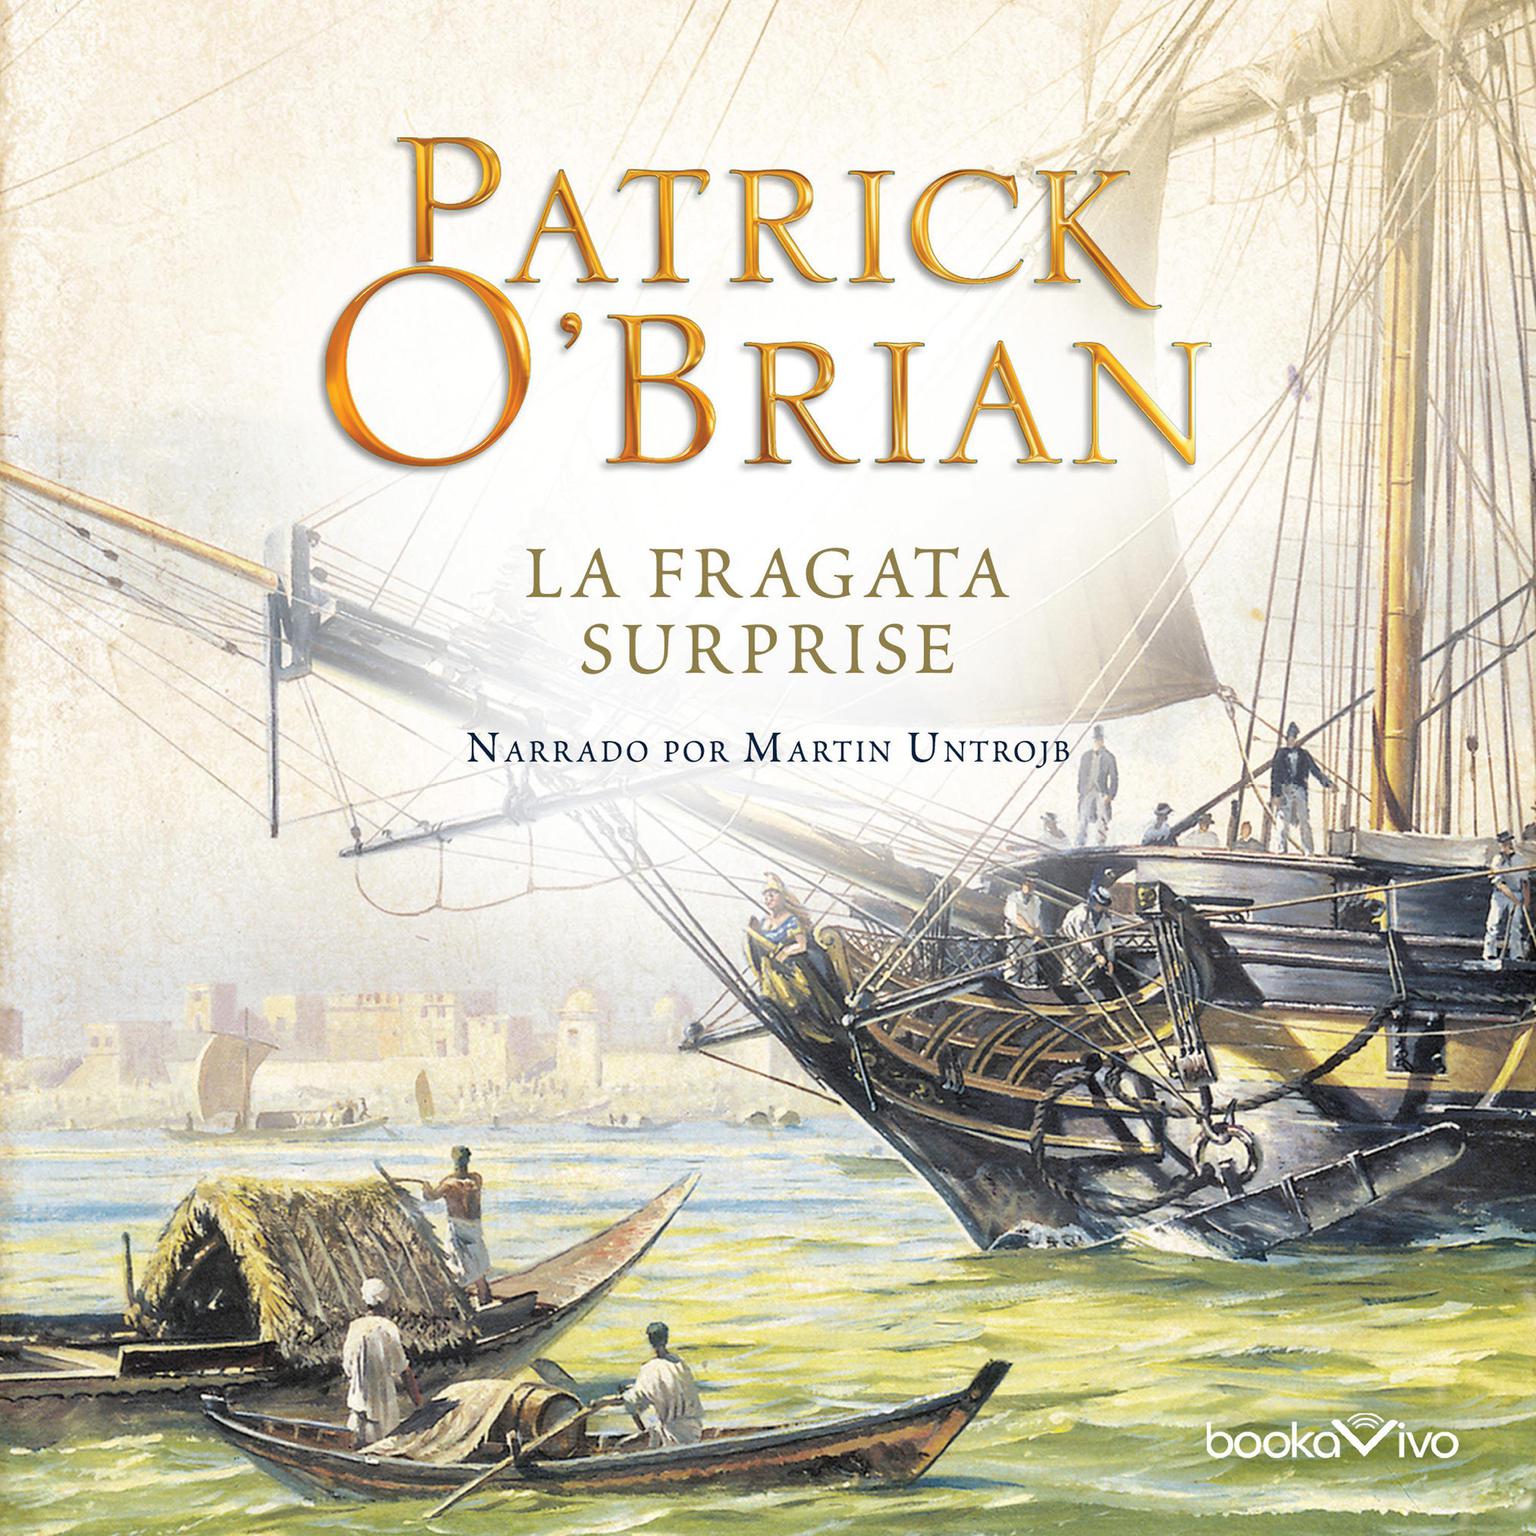 La Fragata Surprise (HMS Surprise) Audiobook, by Patrick O'Brian